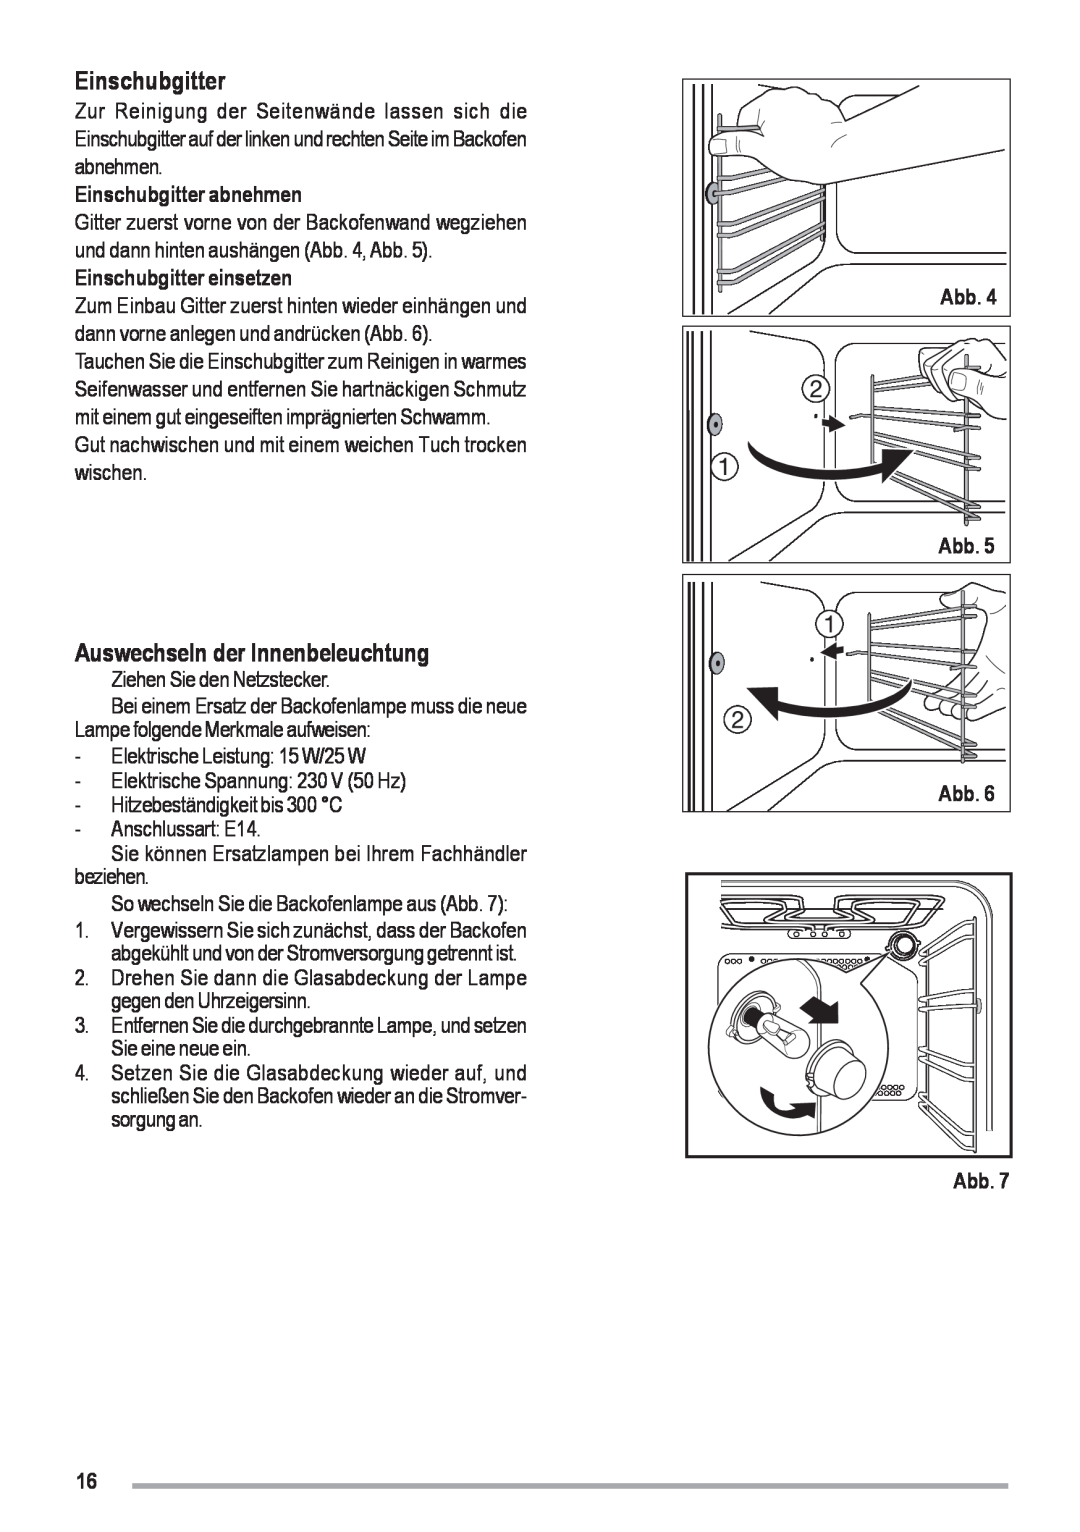 Zanussi ZOU 461 manual Auswechseln der Innenbeleuchtung, Einschubgitter abnehmen, Einschubgitter einsetzen 